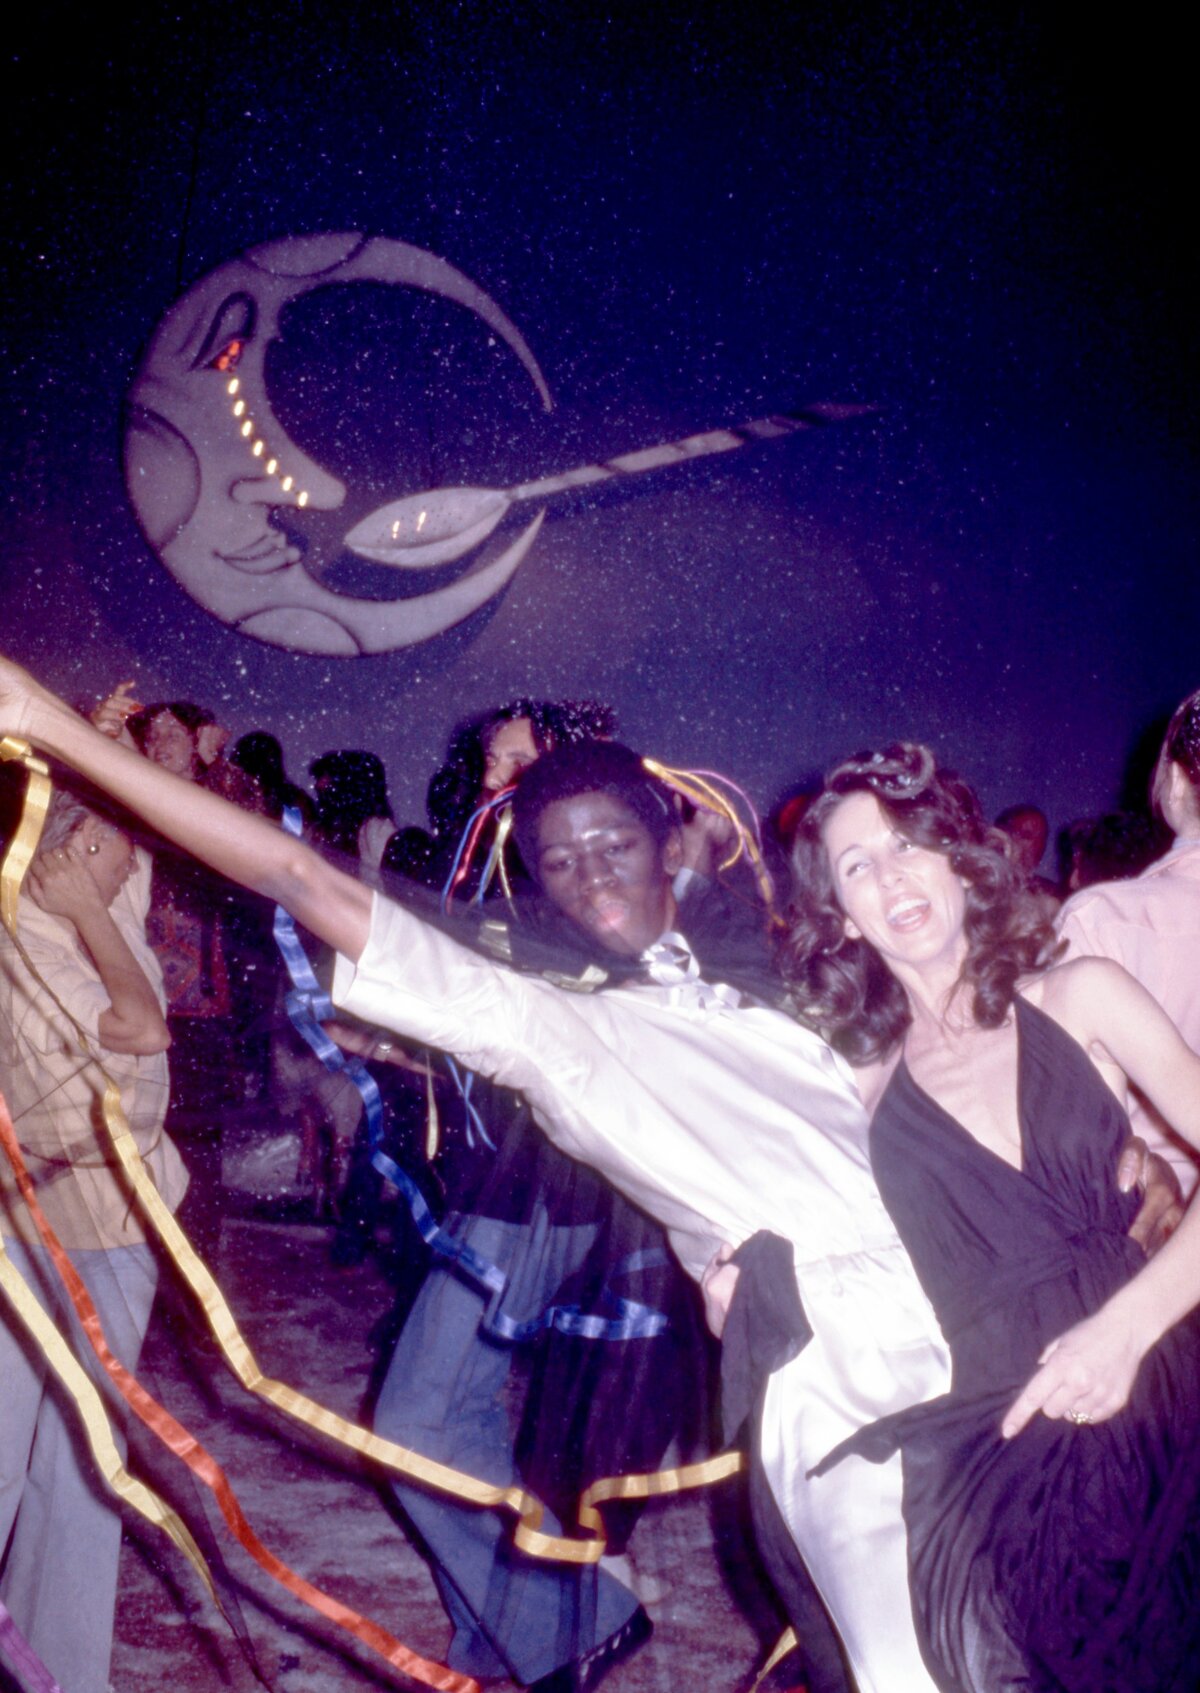 Egy ismeretlen férfi és egy nő táncol a hírhedt "Man In The Moon with a Cocaine Spoon" alatt a New York-i Studio 54 nevű manhattani éjszakai klubban és diszkóban, New Yorkban, 1979 körül. (Fotó: Oscar Abolafia/TPLP/Getty Images)